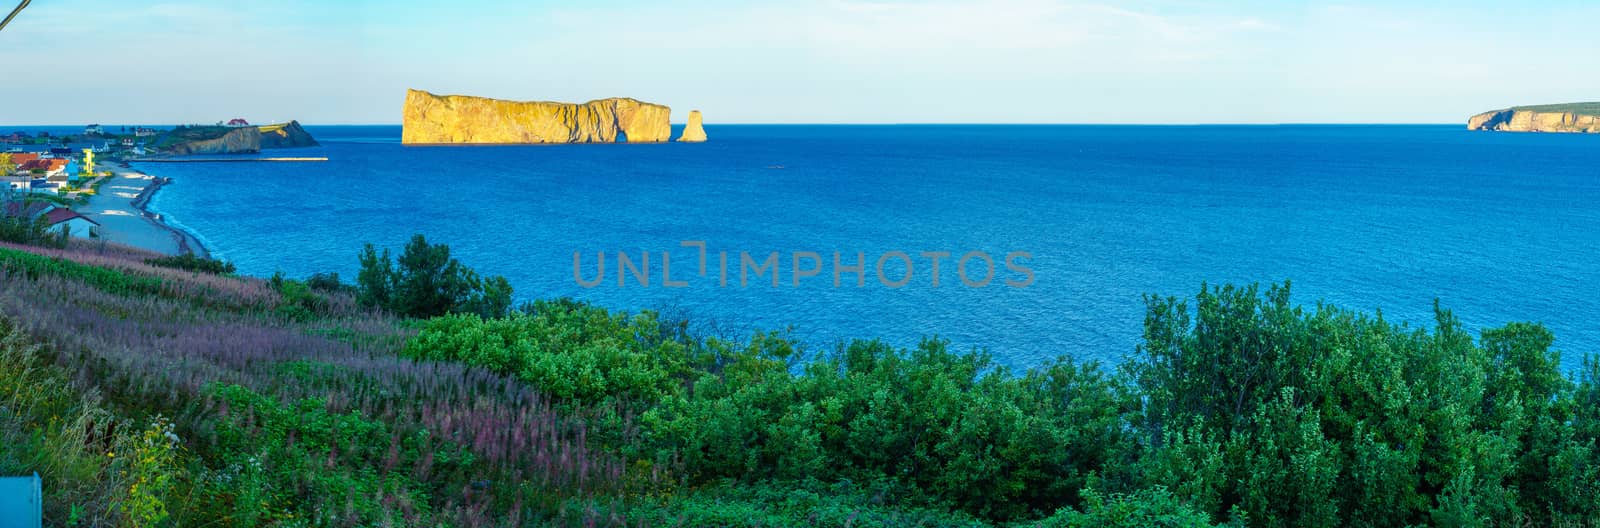 Panoramic view of Bonaventure Island, Perce rock, and Perce vill by RnDmS